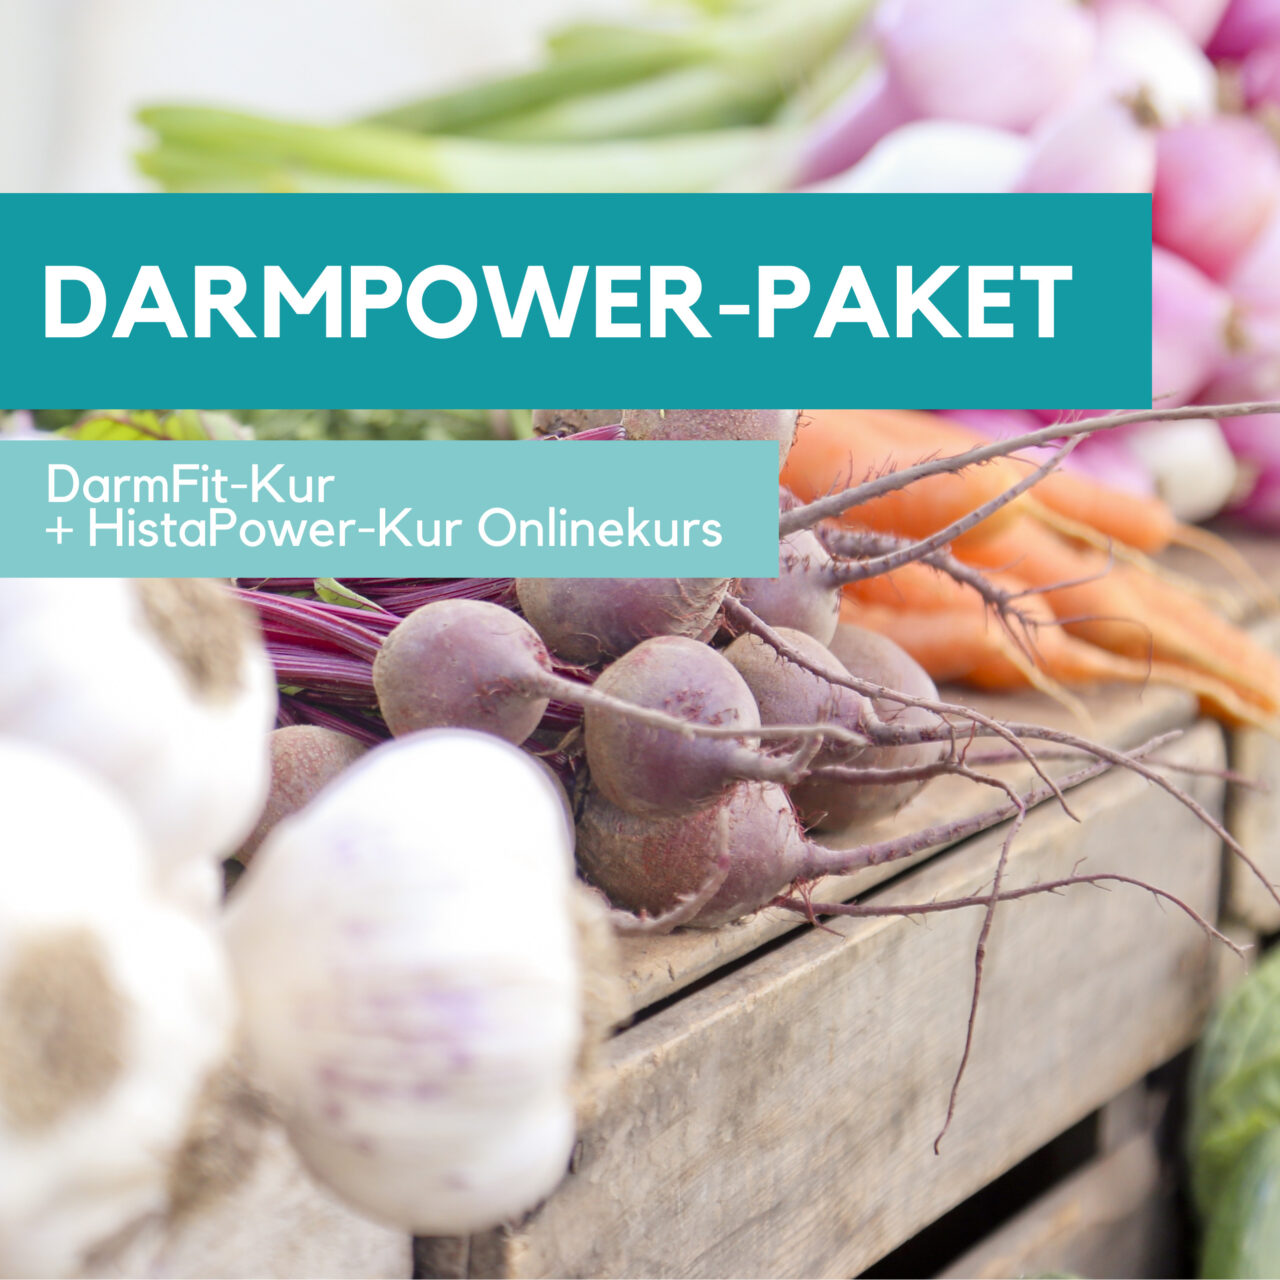 DarmPower-Paket